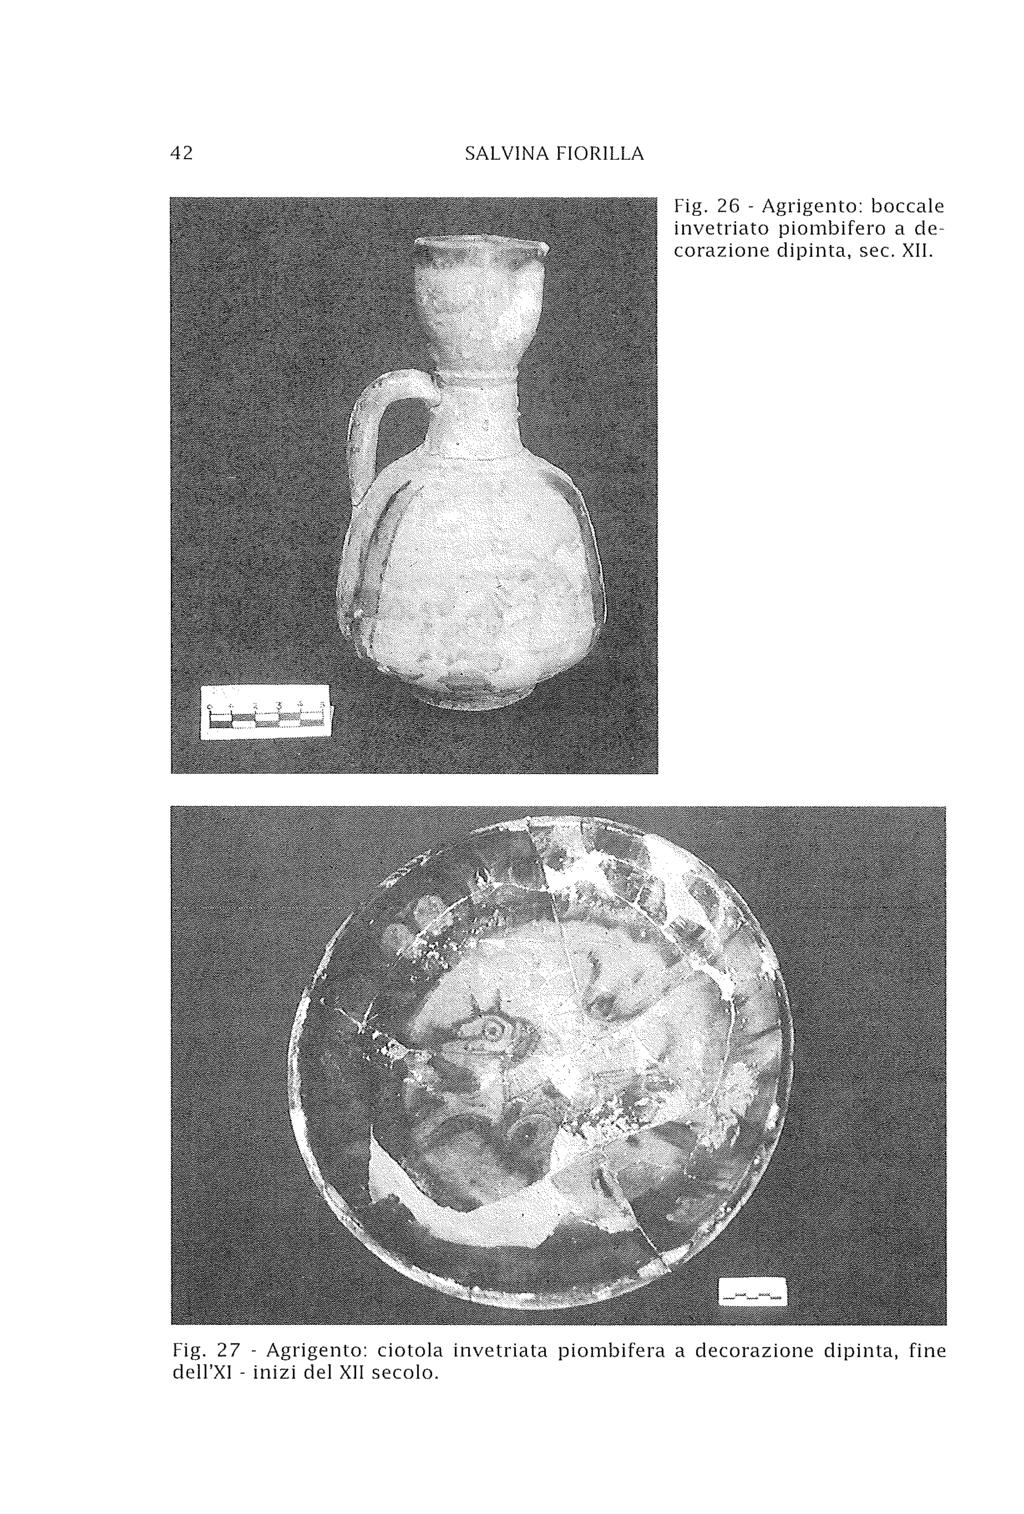 42 SALVINA FIORILLA Fig. 26 - Agrigento: boccale invetriato piombifero a decorazione dipinta, sec. XII.